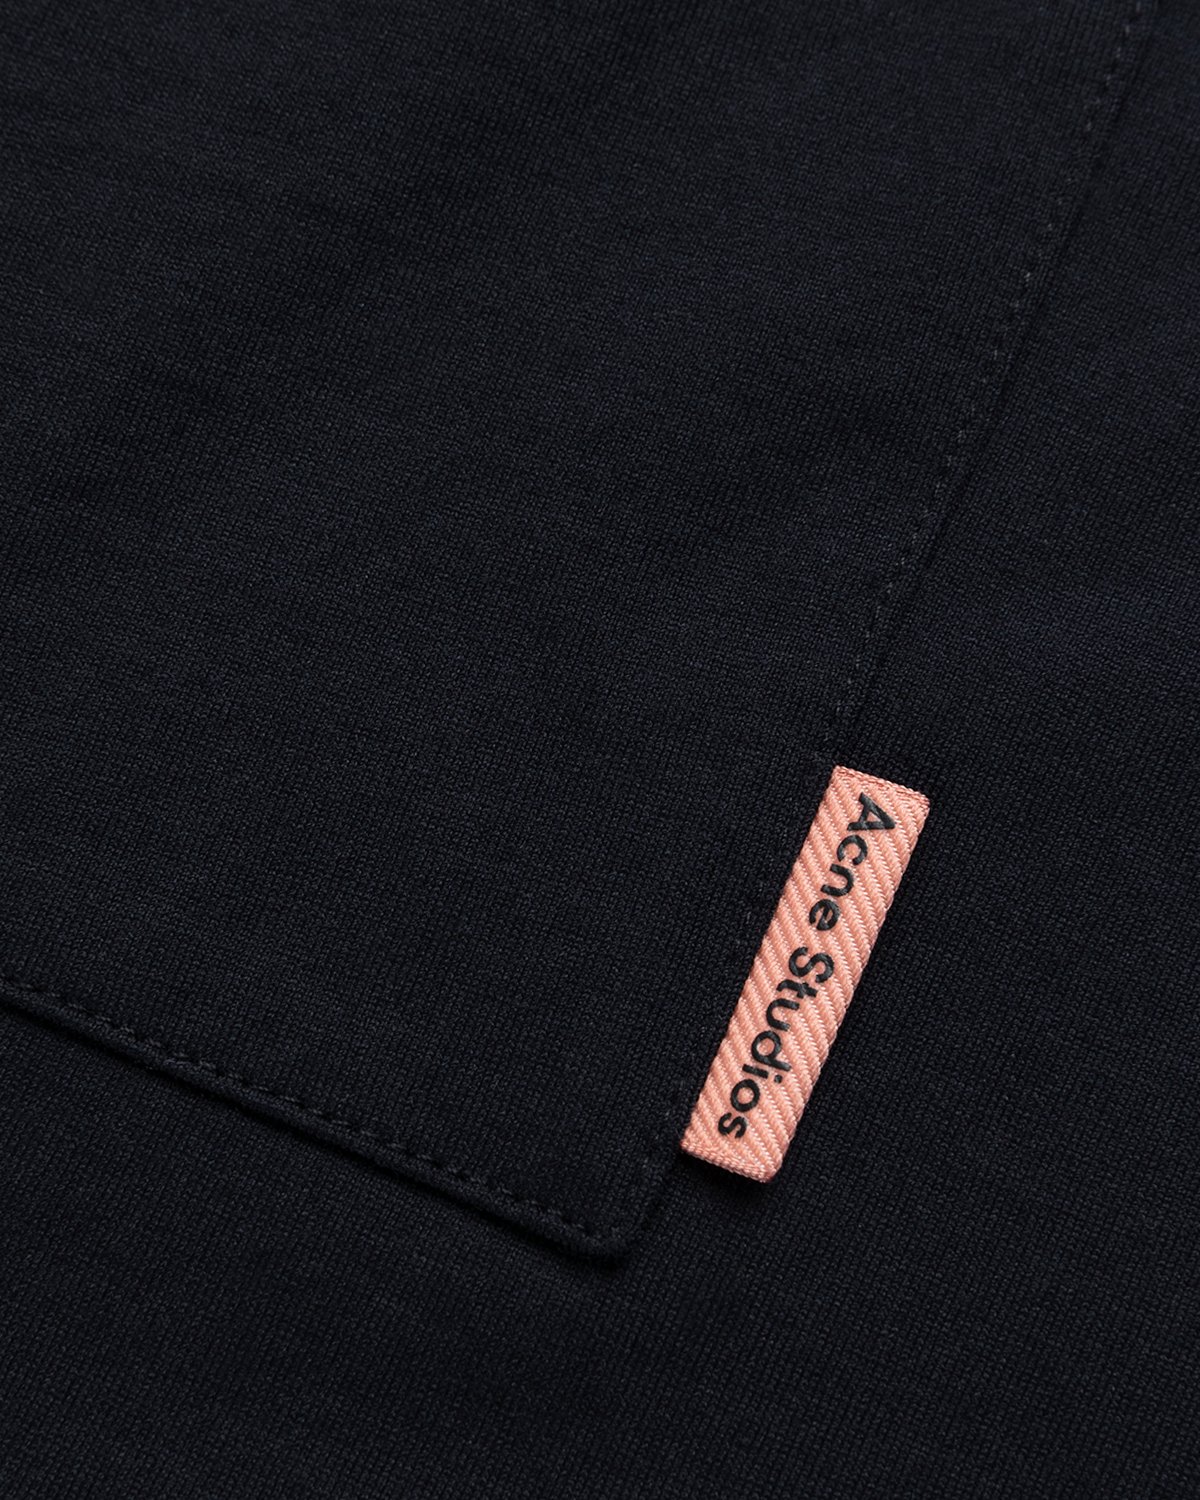 Acne Studios - Short Sleeve Pocket T-Shirt Black - Clothing - Black - Image 5